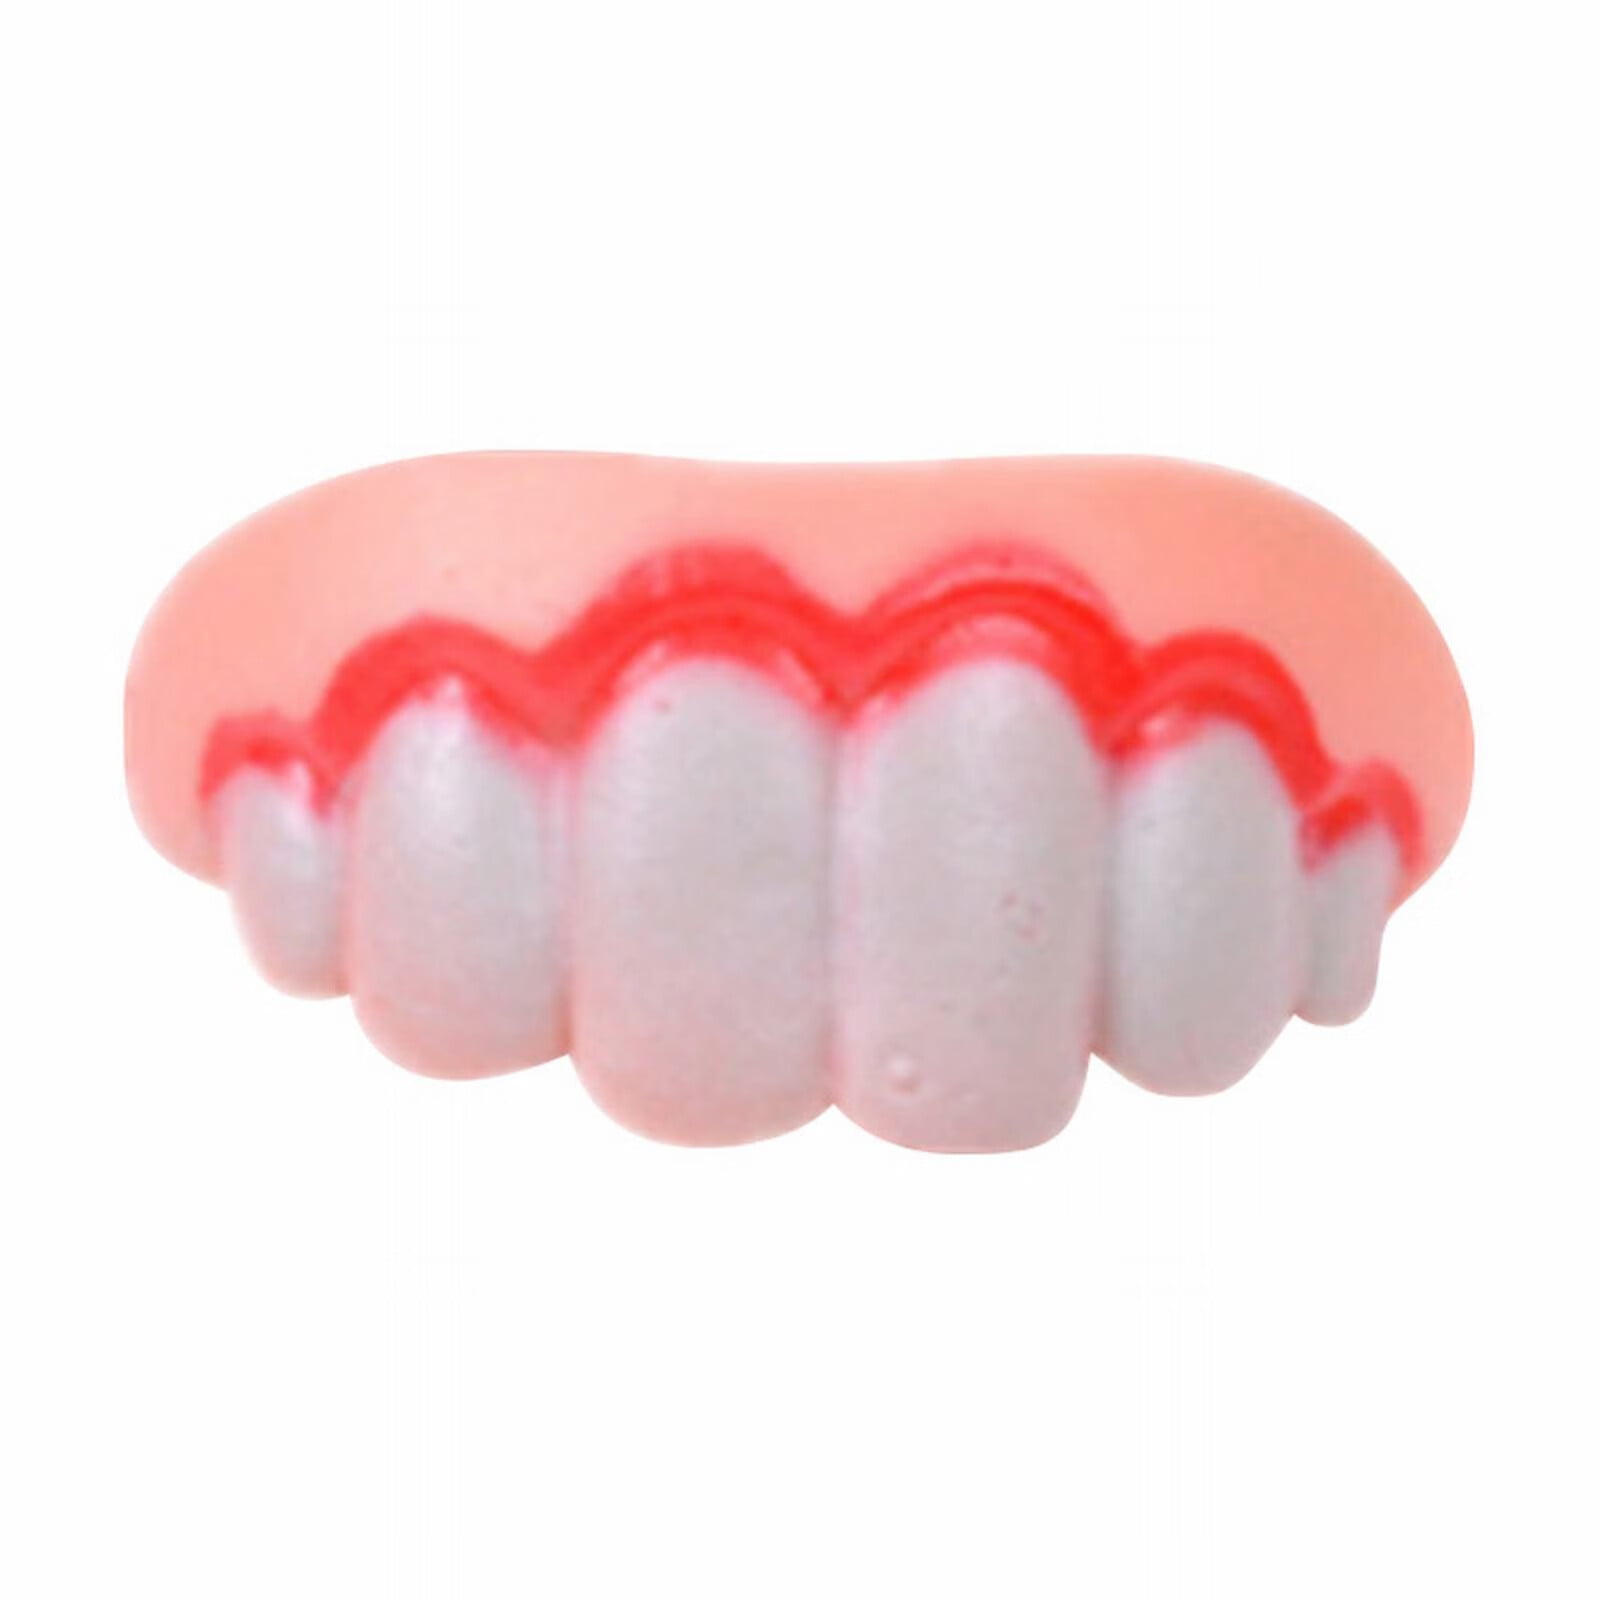 Jtckarpu Gnarly Teeth Teeth Teeth Devil Denture Teeth for Hallowee n ...